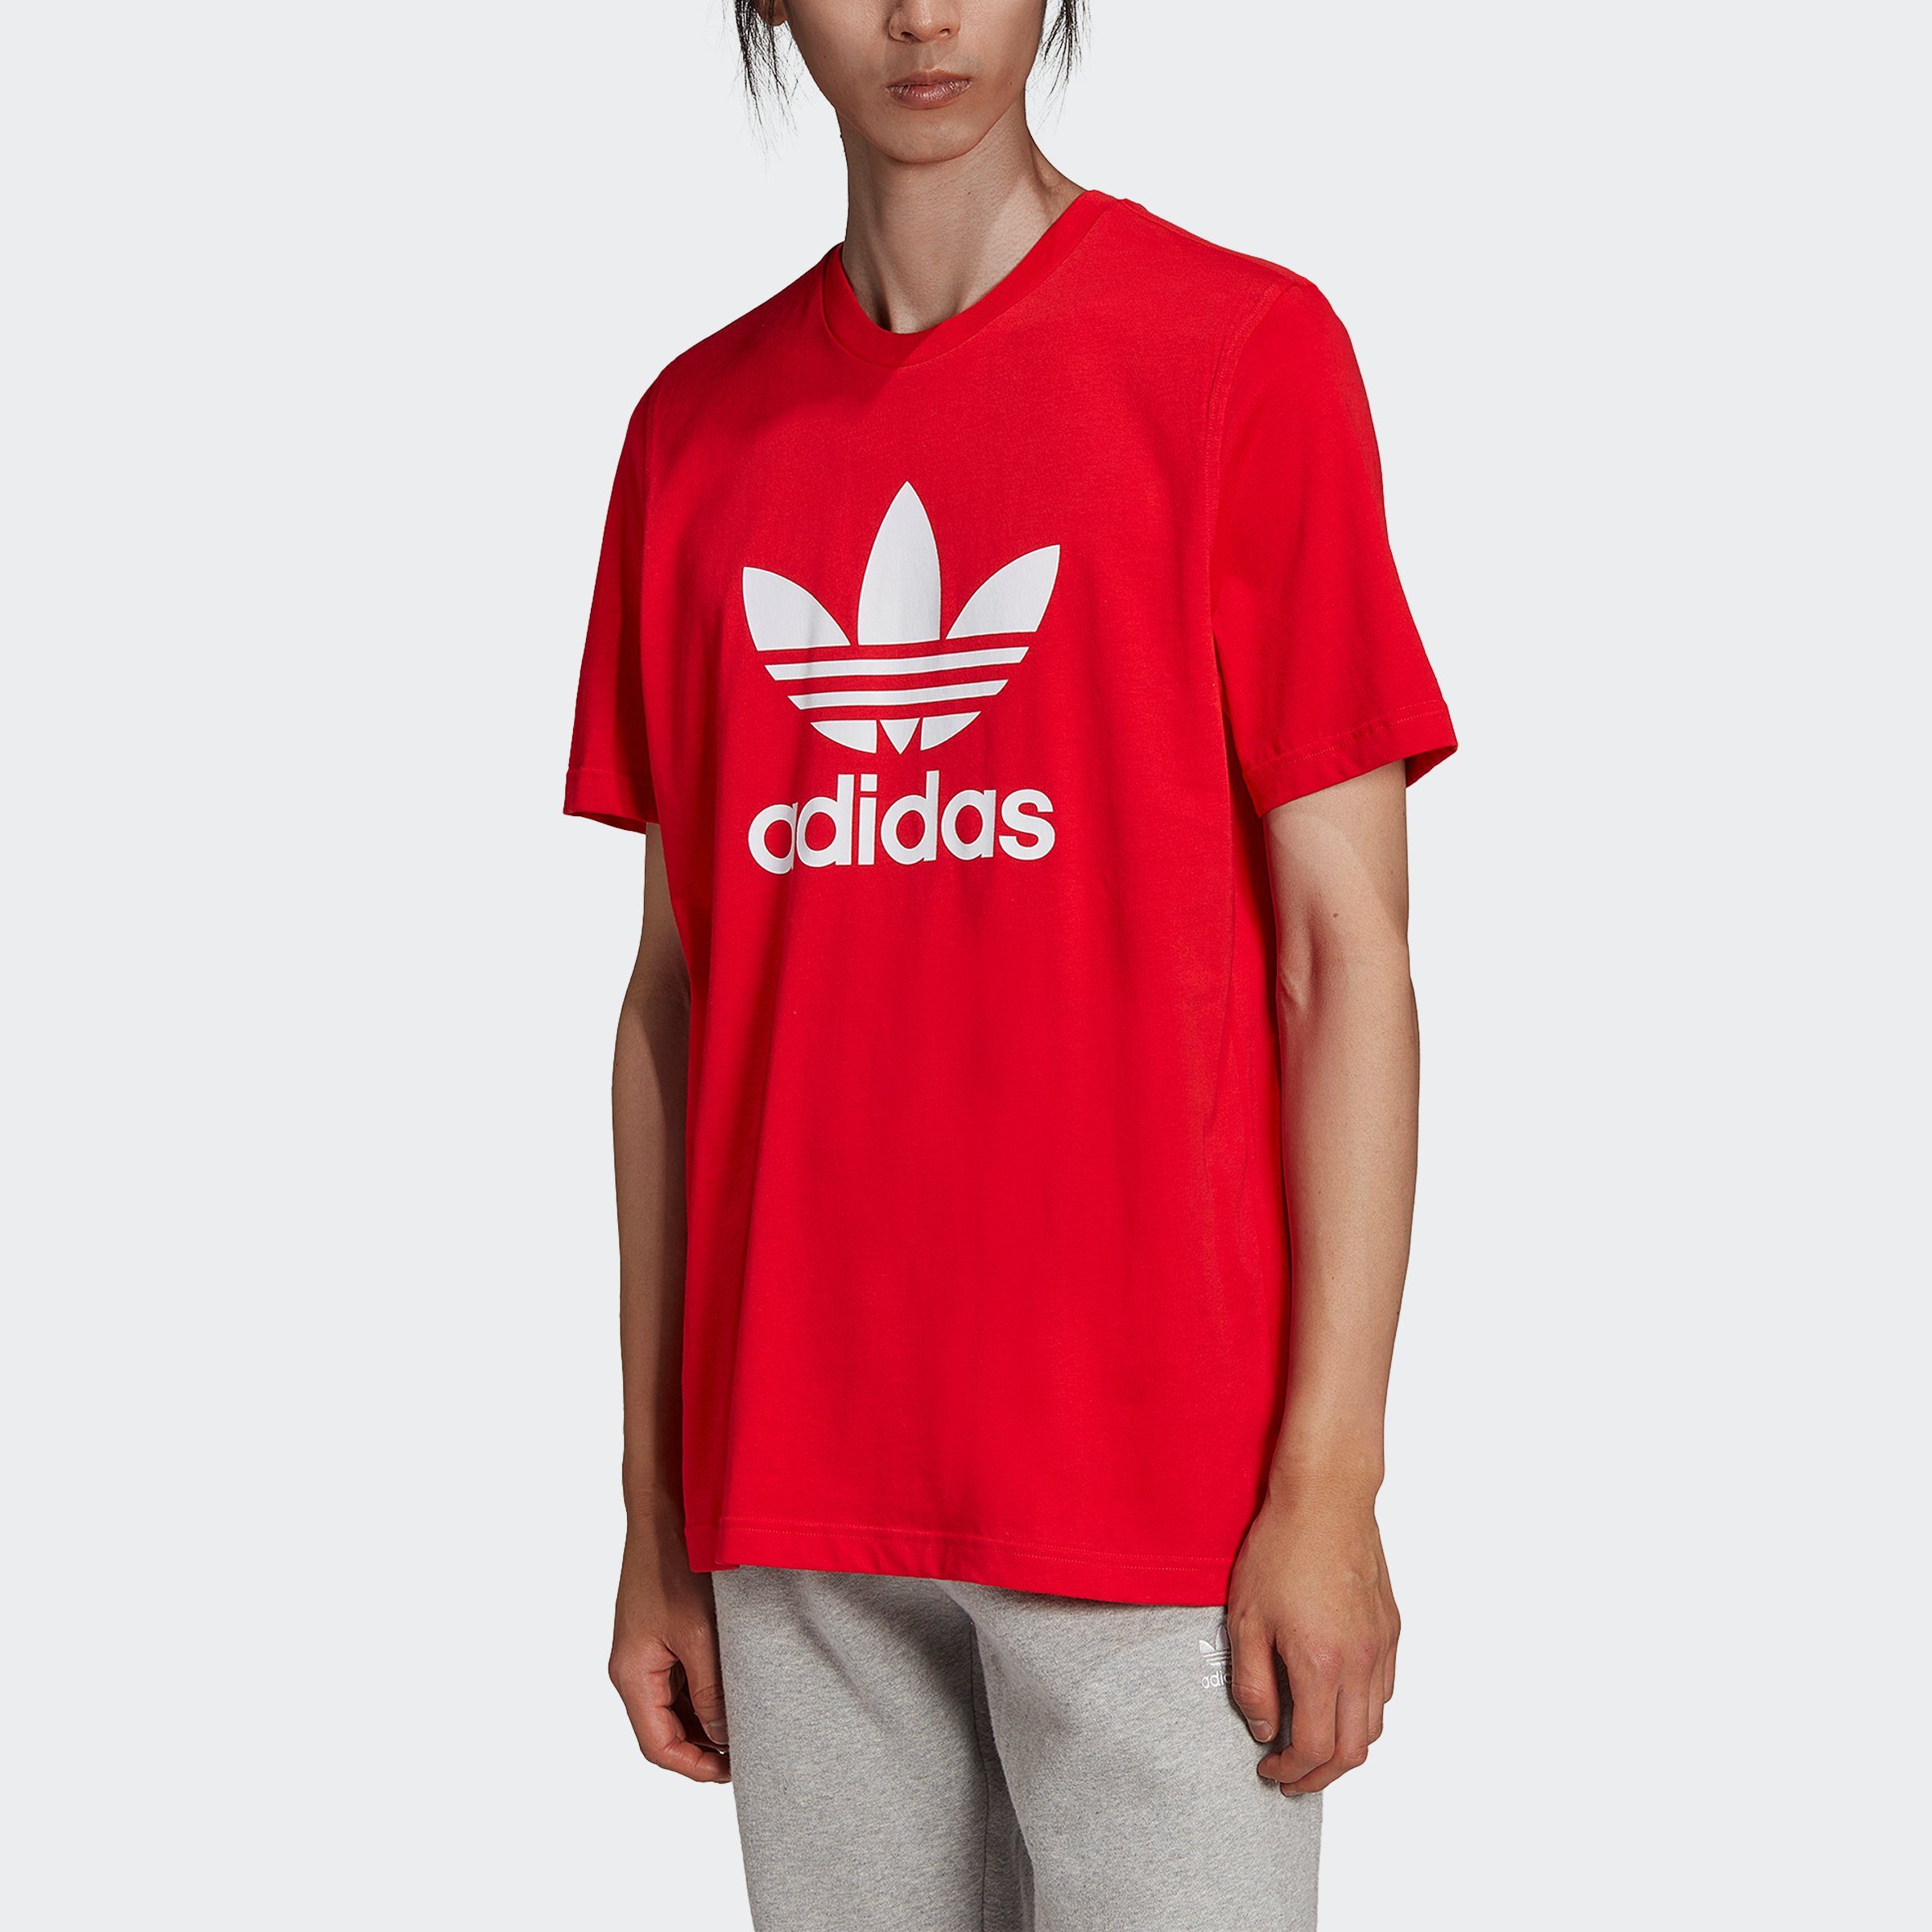 adidas Originals T-Shirt CLASSICS TREFOIL ADICOLOR VIVRED/WHITE